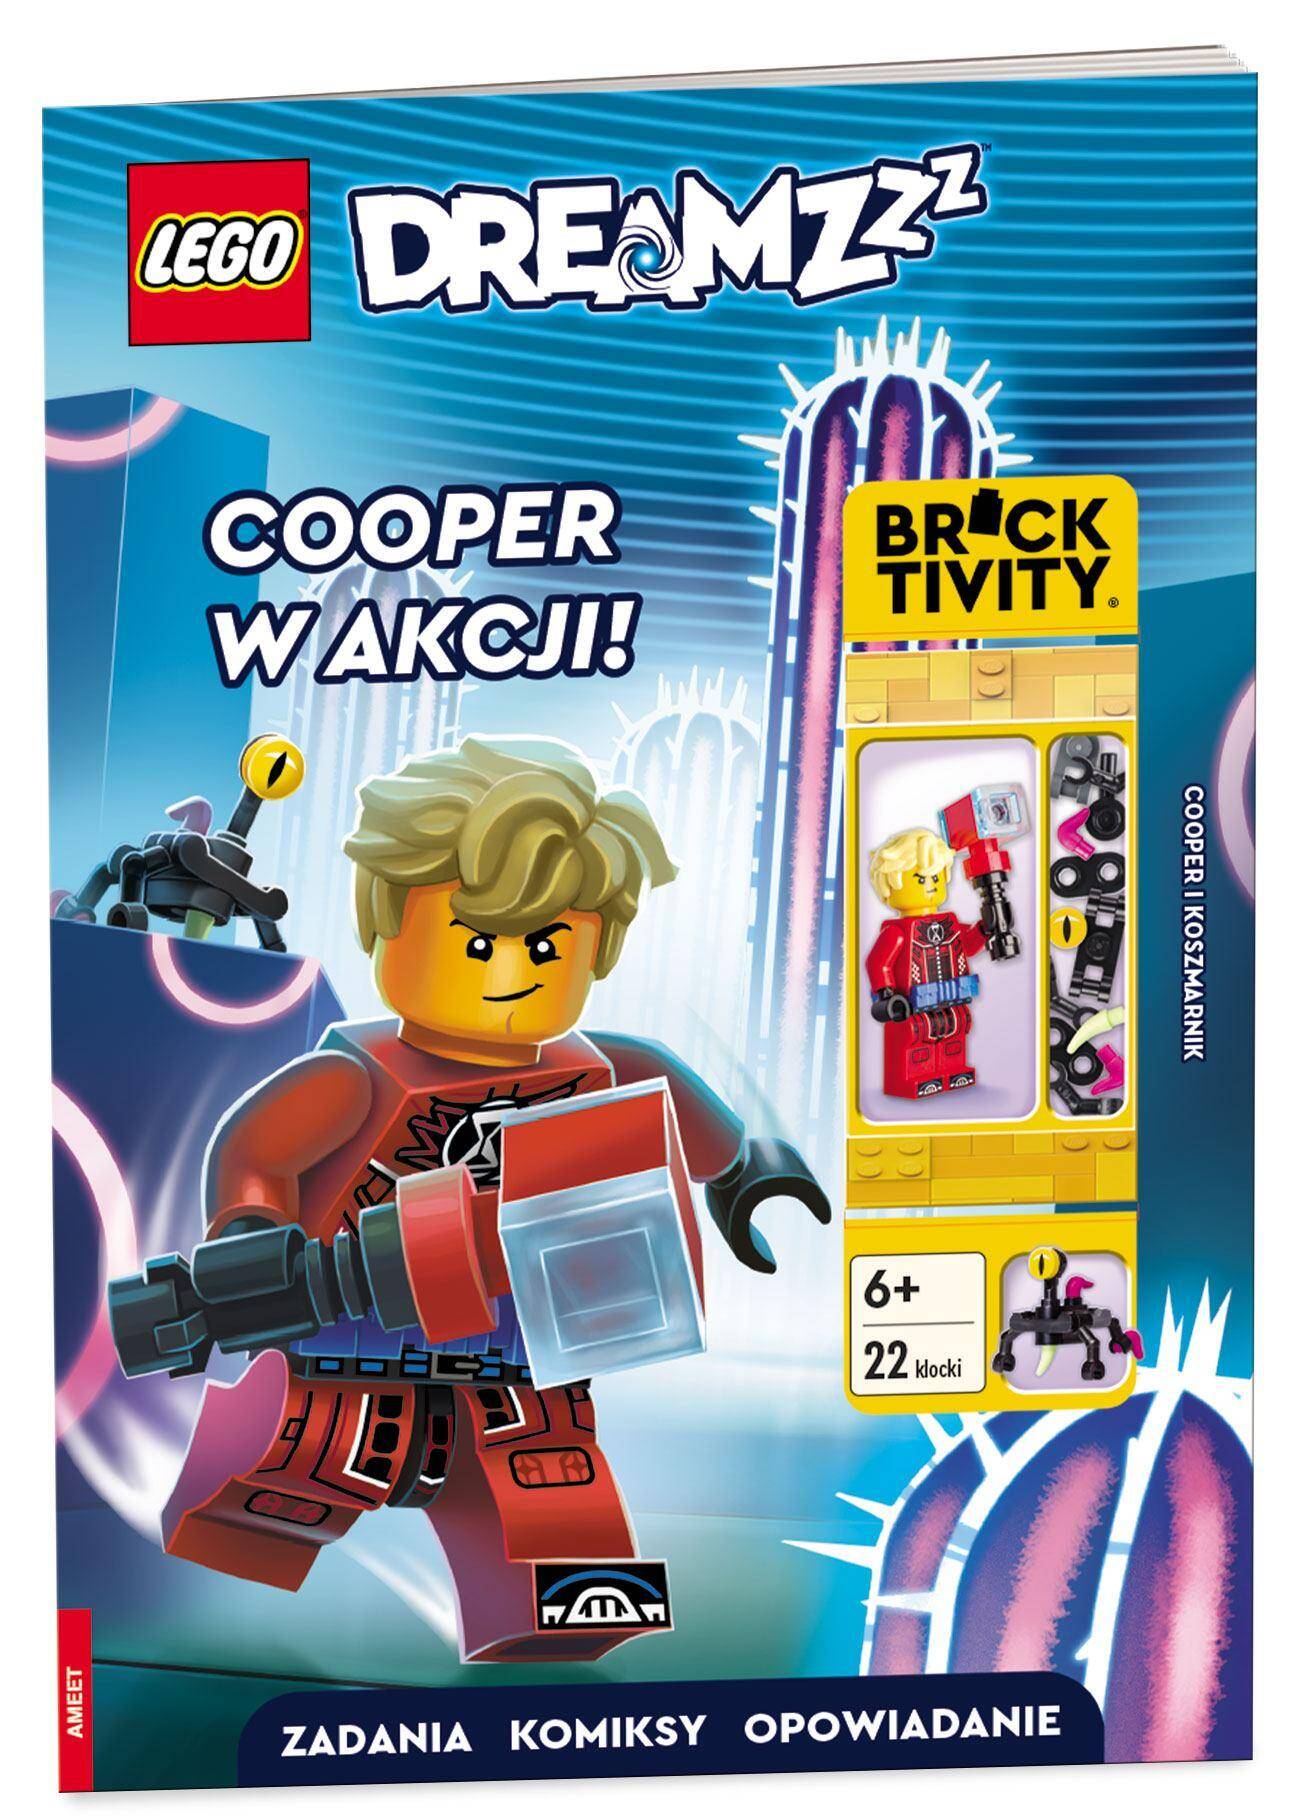 Lego dreamzzz Cooper w akcji! LNC-5403P1